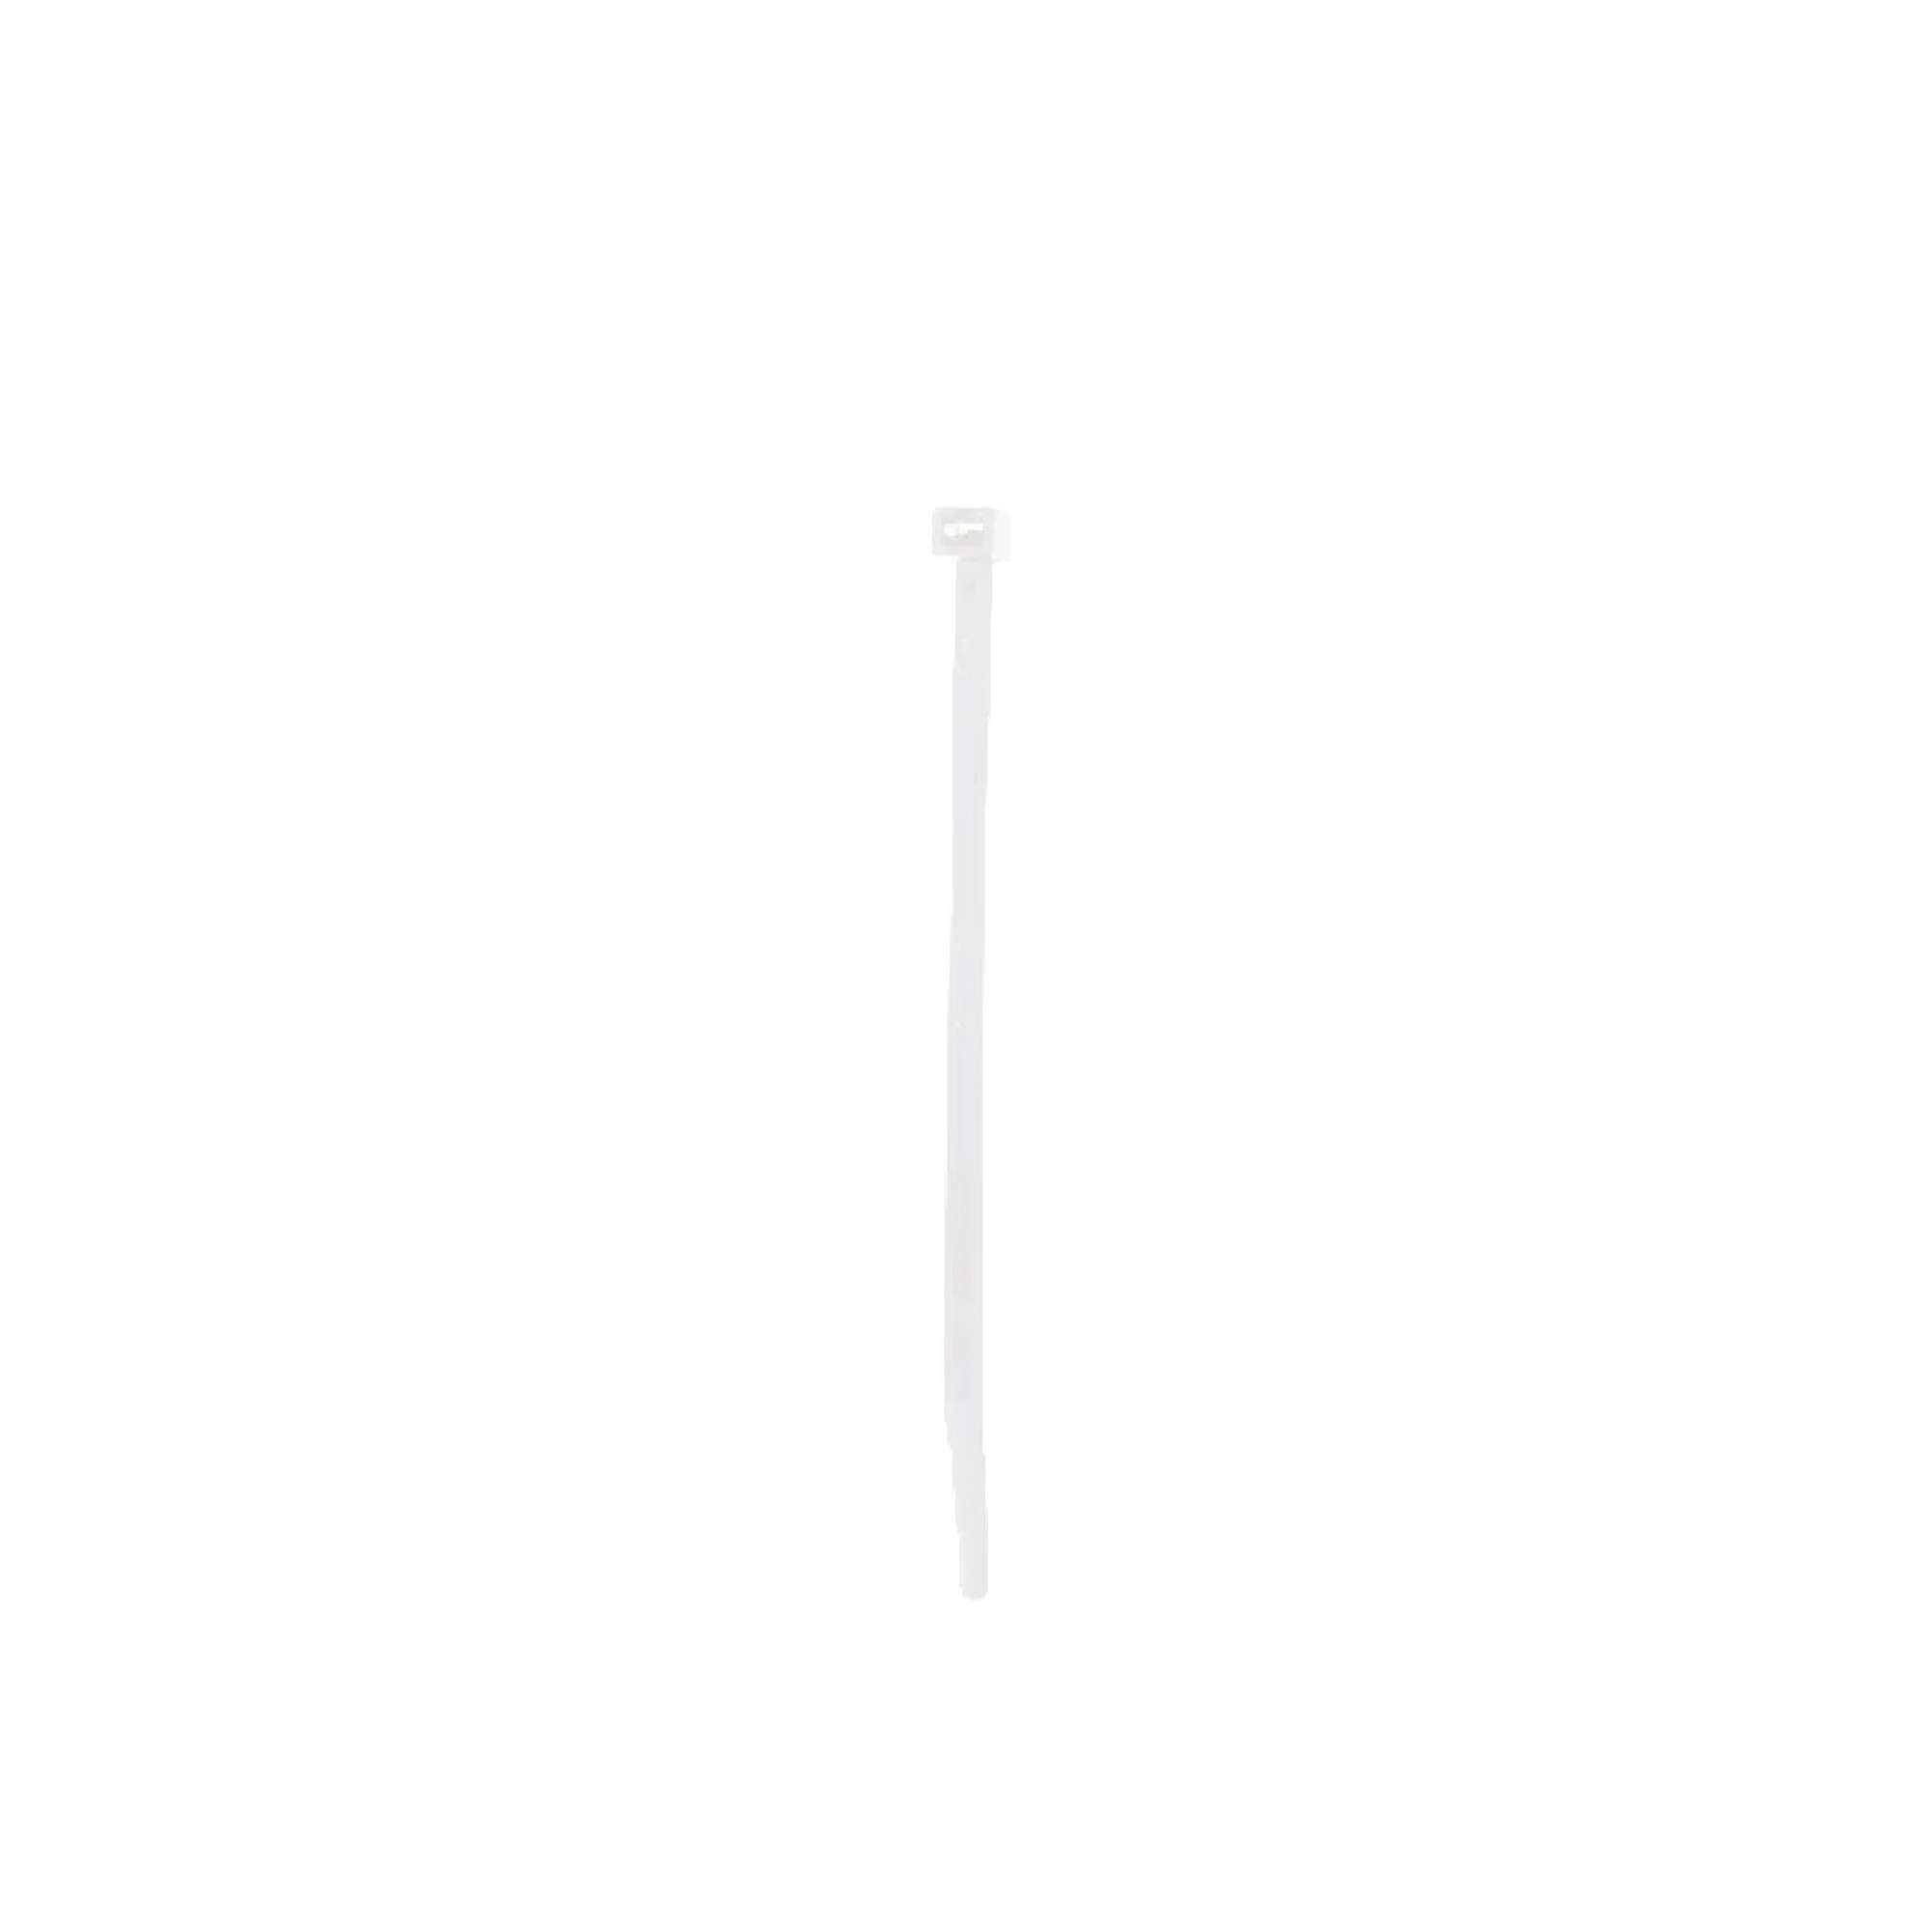 Nylon cable tie white - 100 pcs - Friulsider